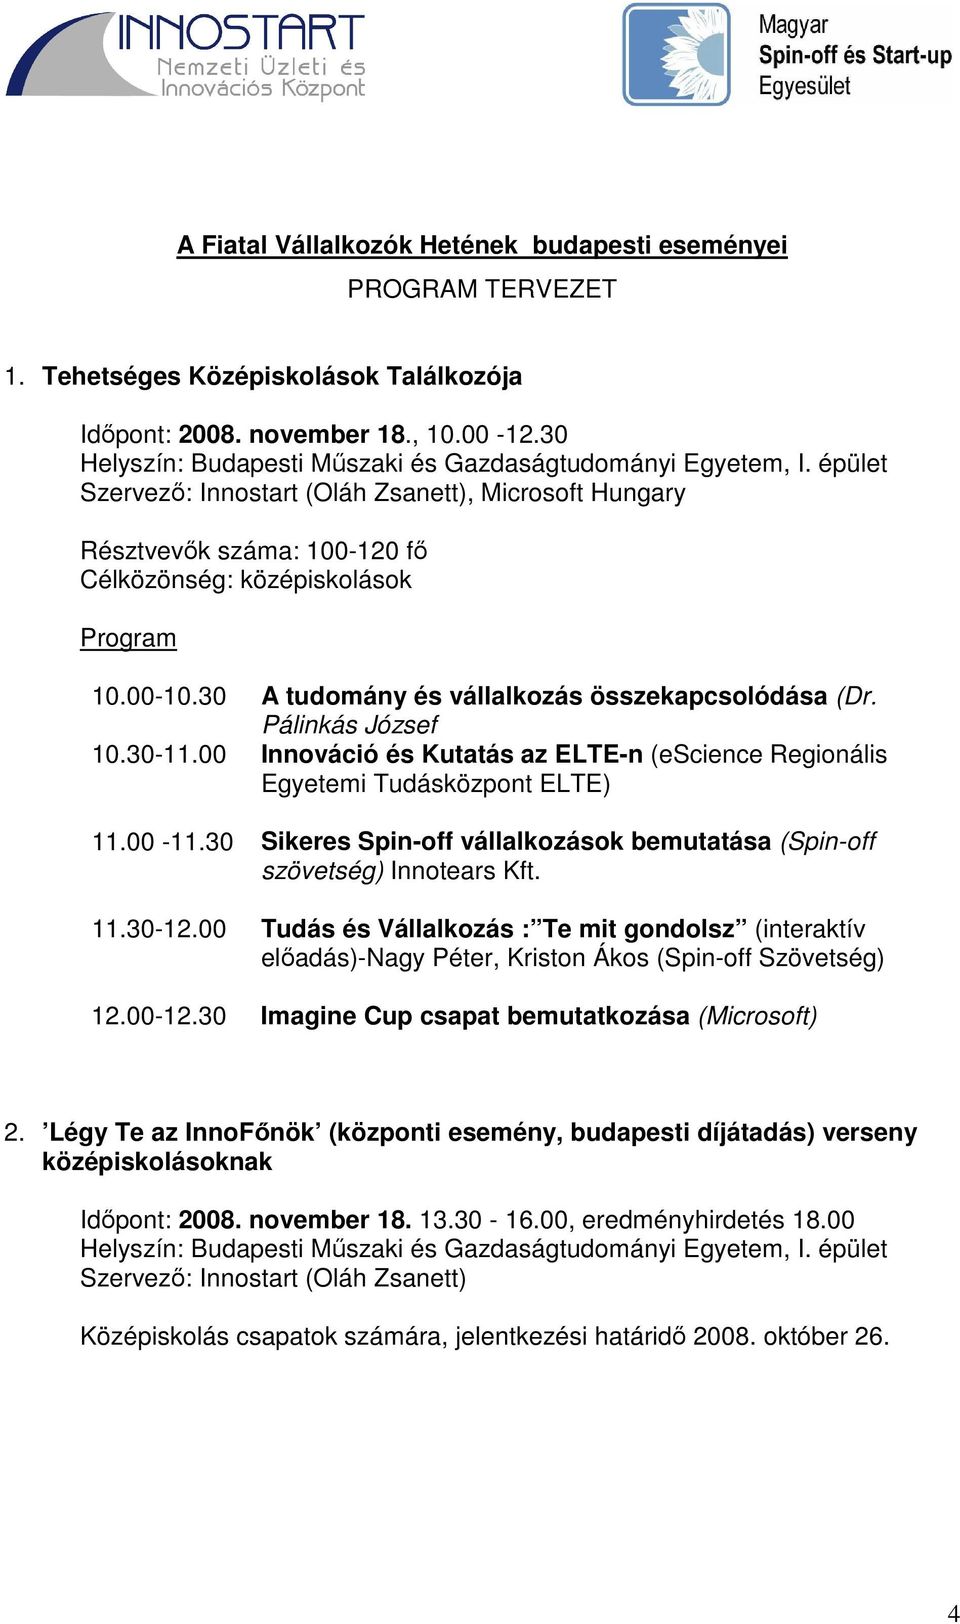 30 A tudomány és vállalkozás összekapcsolódása (Dr. Pálinkás József 10.30-11.00 Innováció és Kutatás az ELTE-n (escience Regionális Egyetemi Tudásközpont ELTE) 11.00-11.